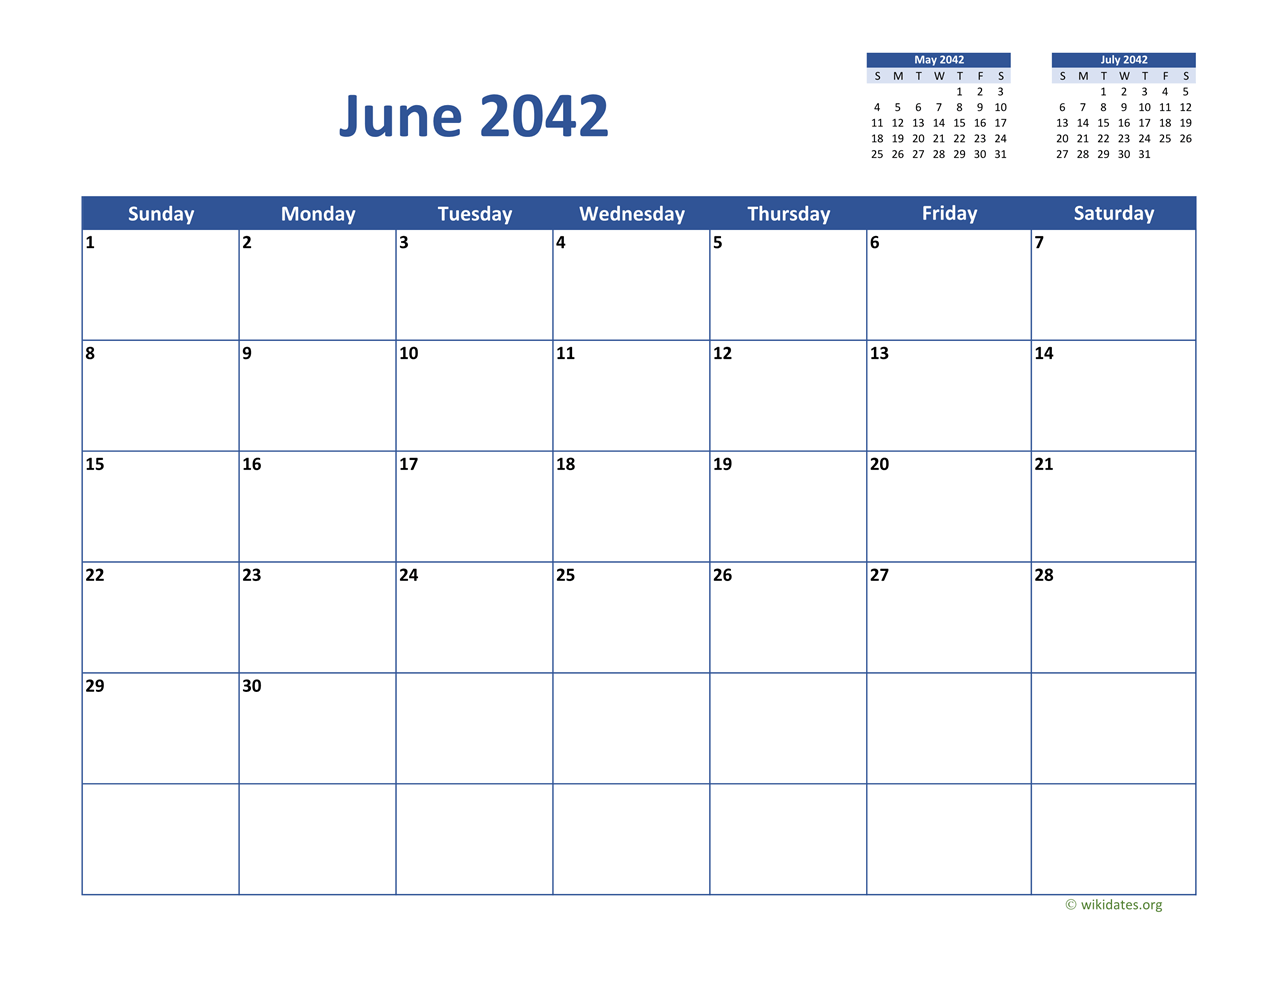 June 2042 Calendar Classic | WikiDates.org